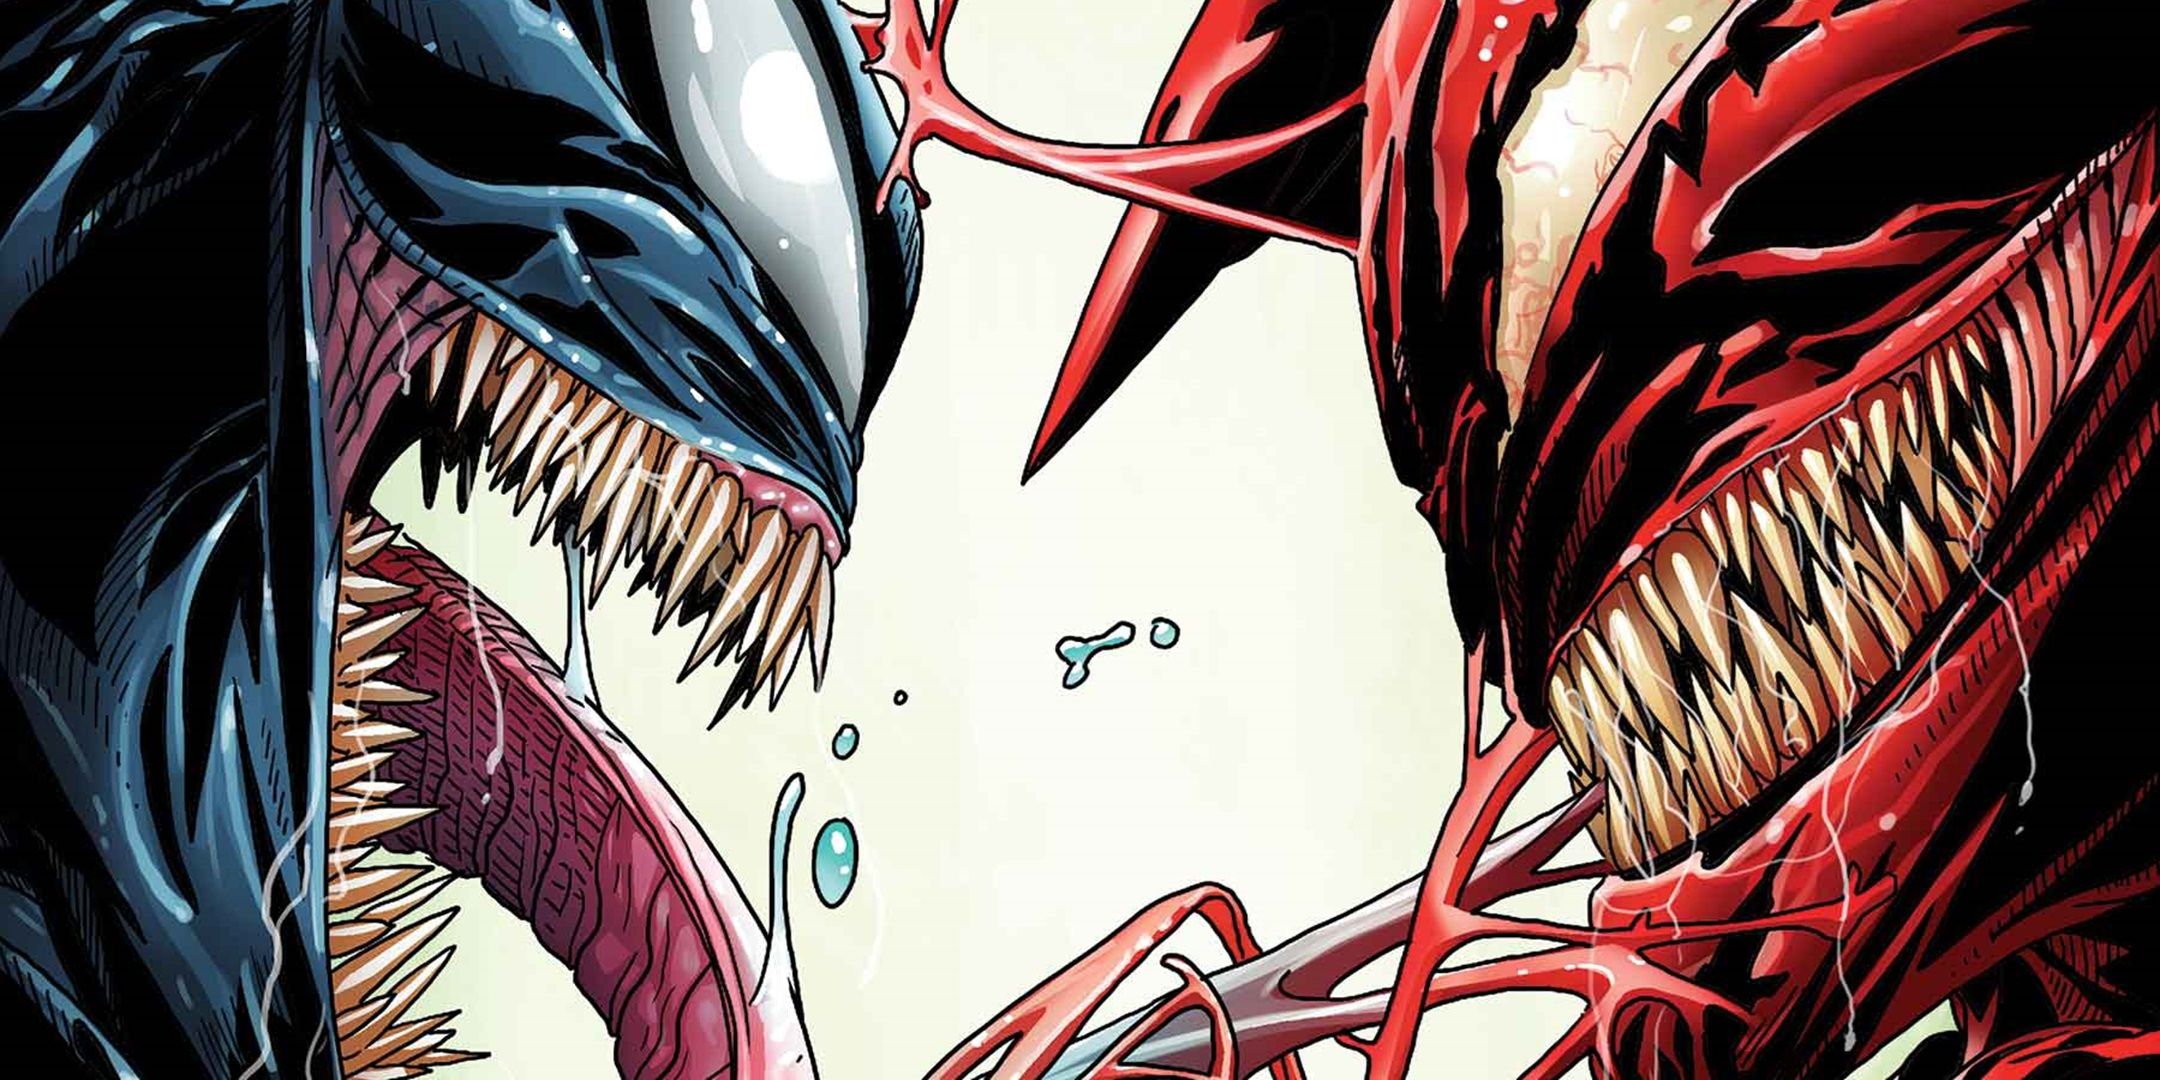 Carnage faces off against Venom